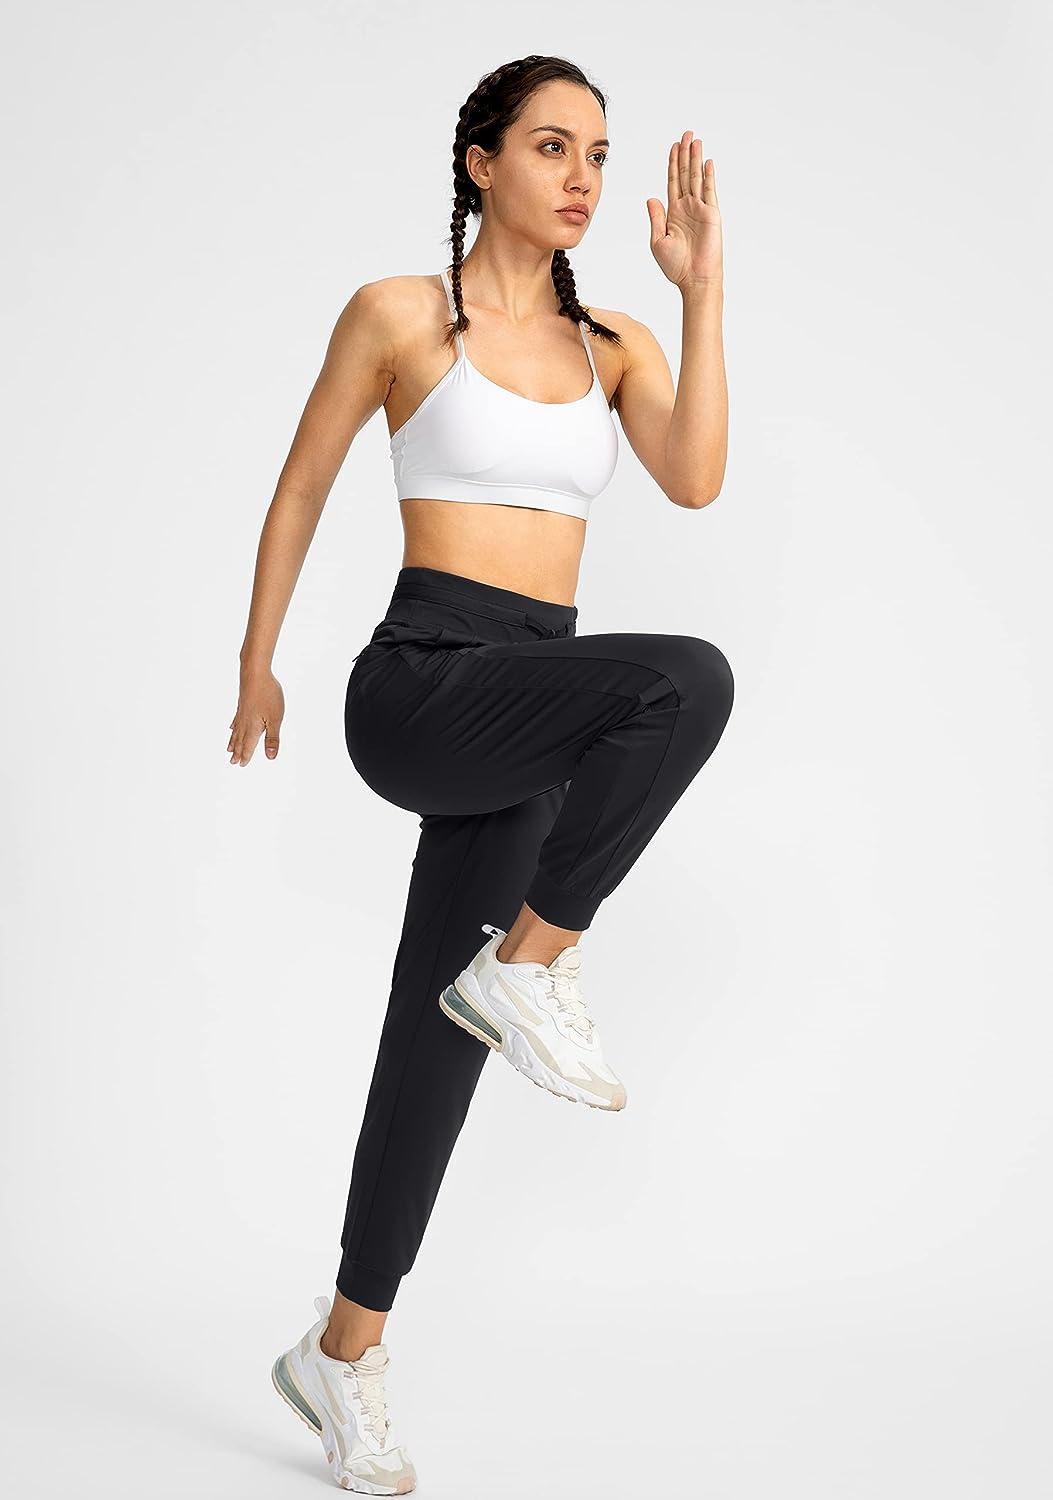  Womens Joggers High Waist Yoga Pockets Sweatpants